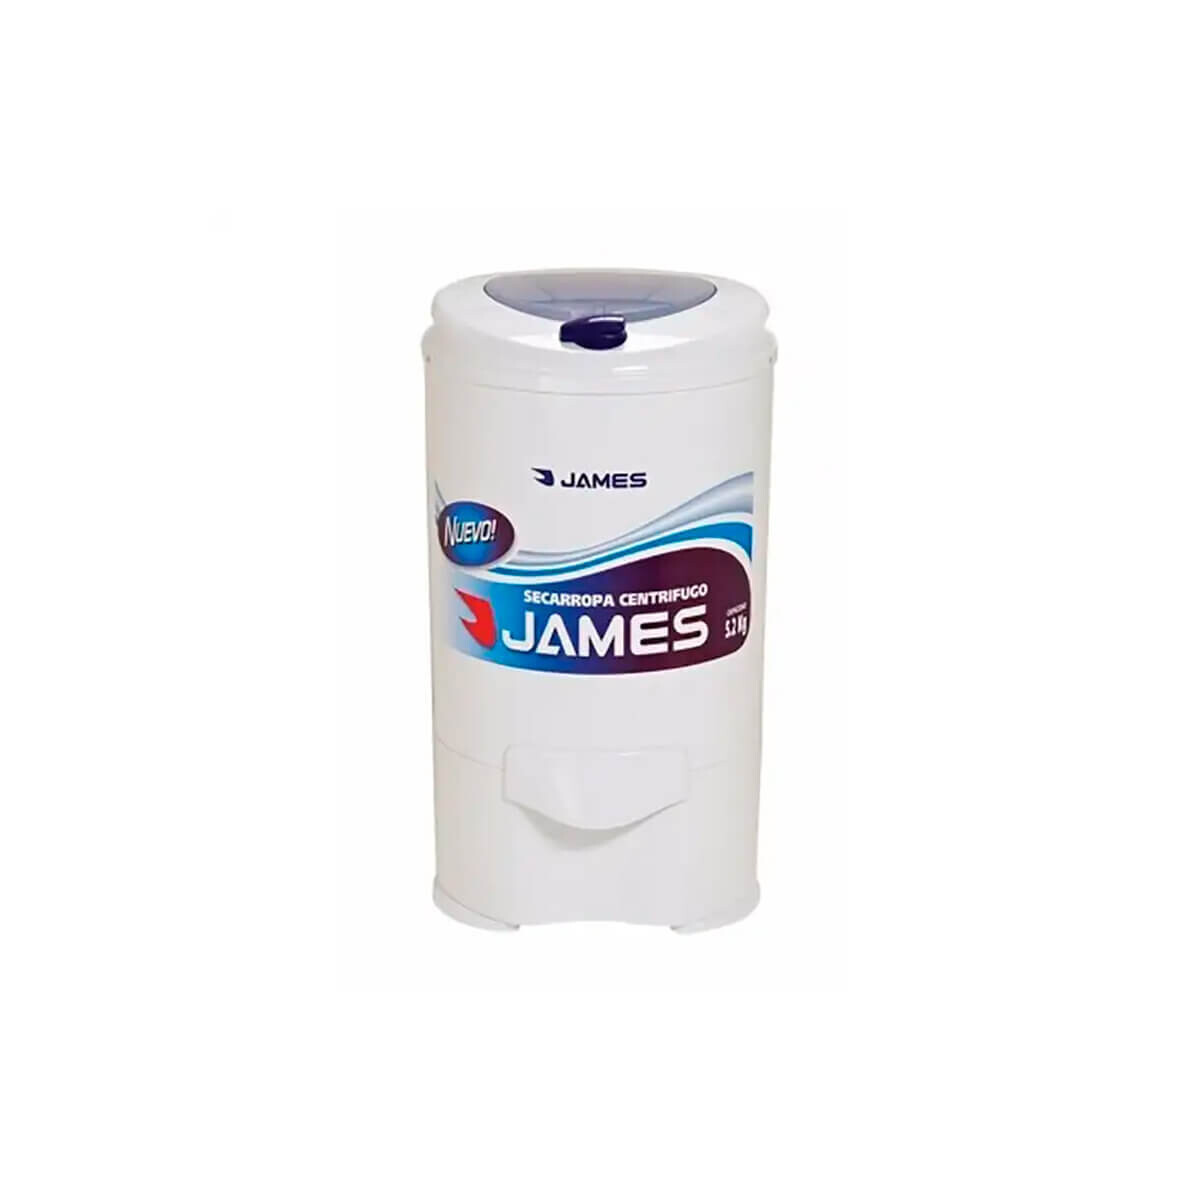 Centrifugadora James 5.2 Kg